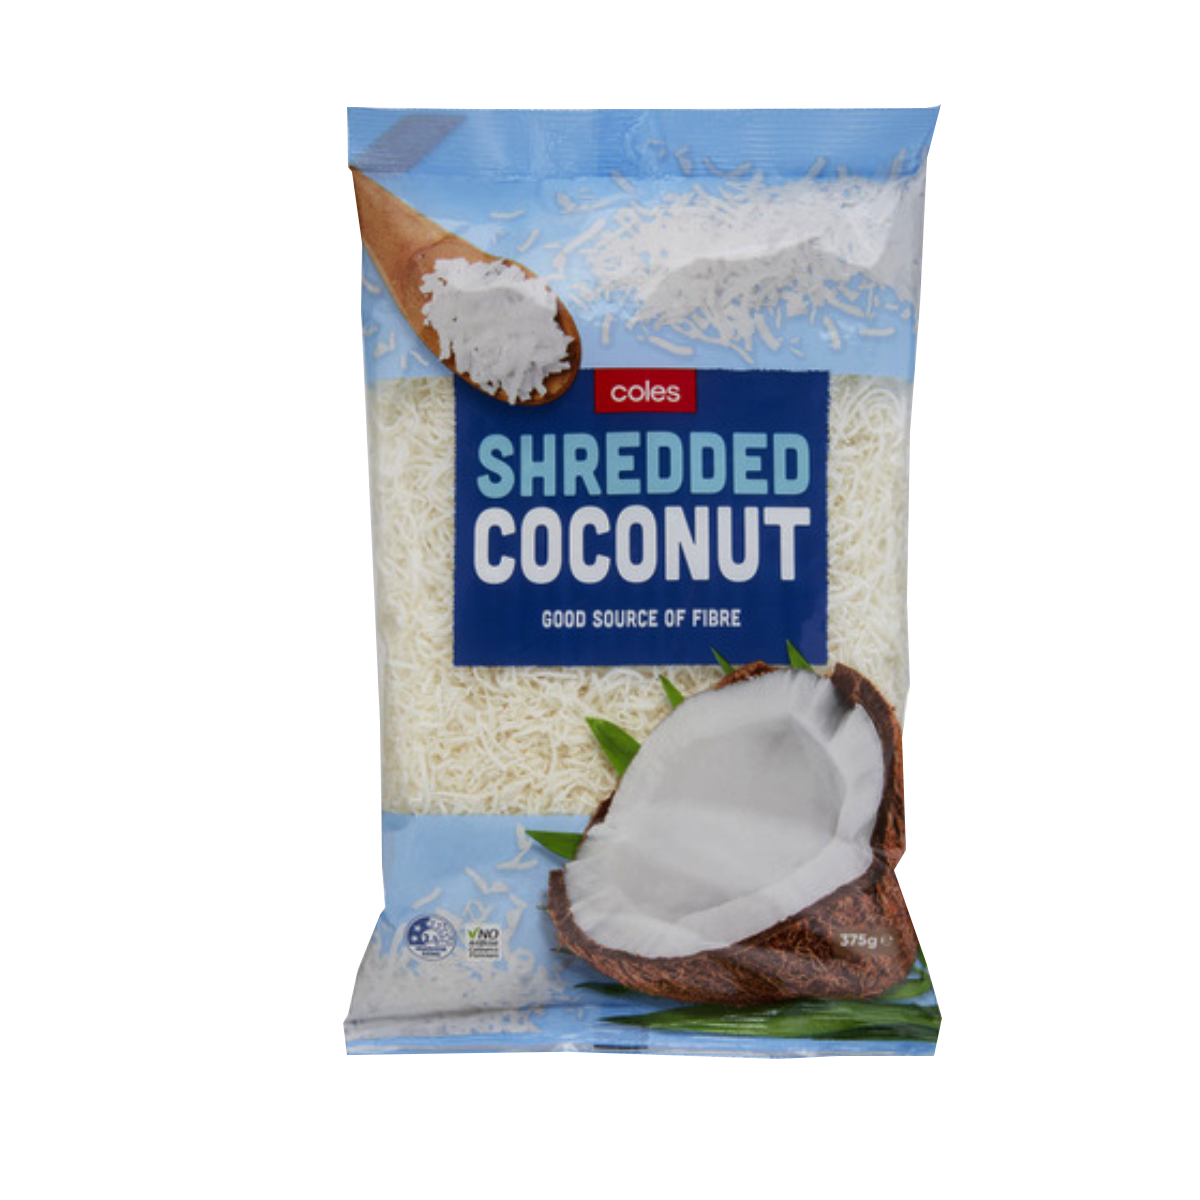 Shredded Coconut 375g